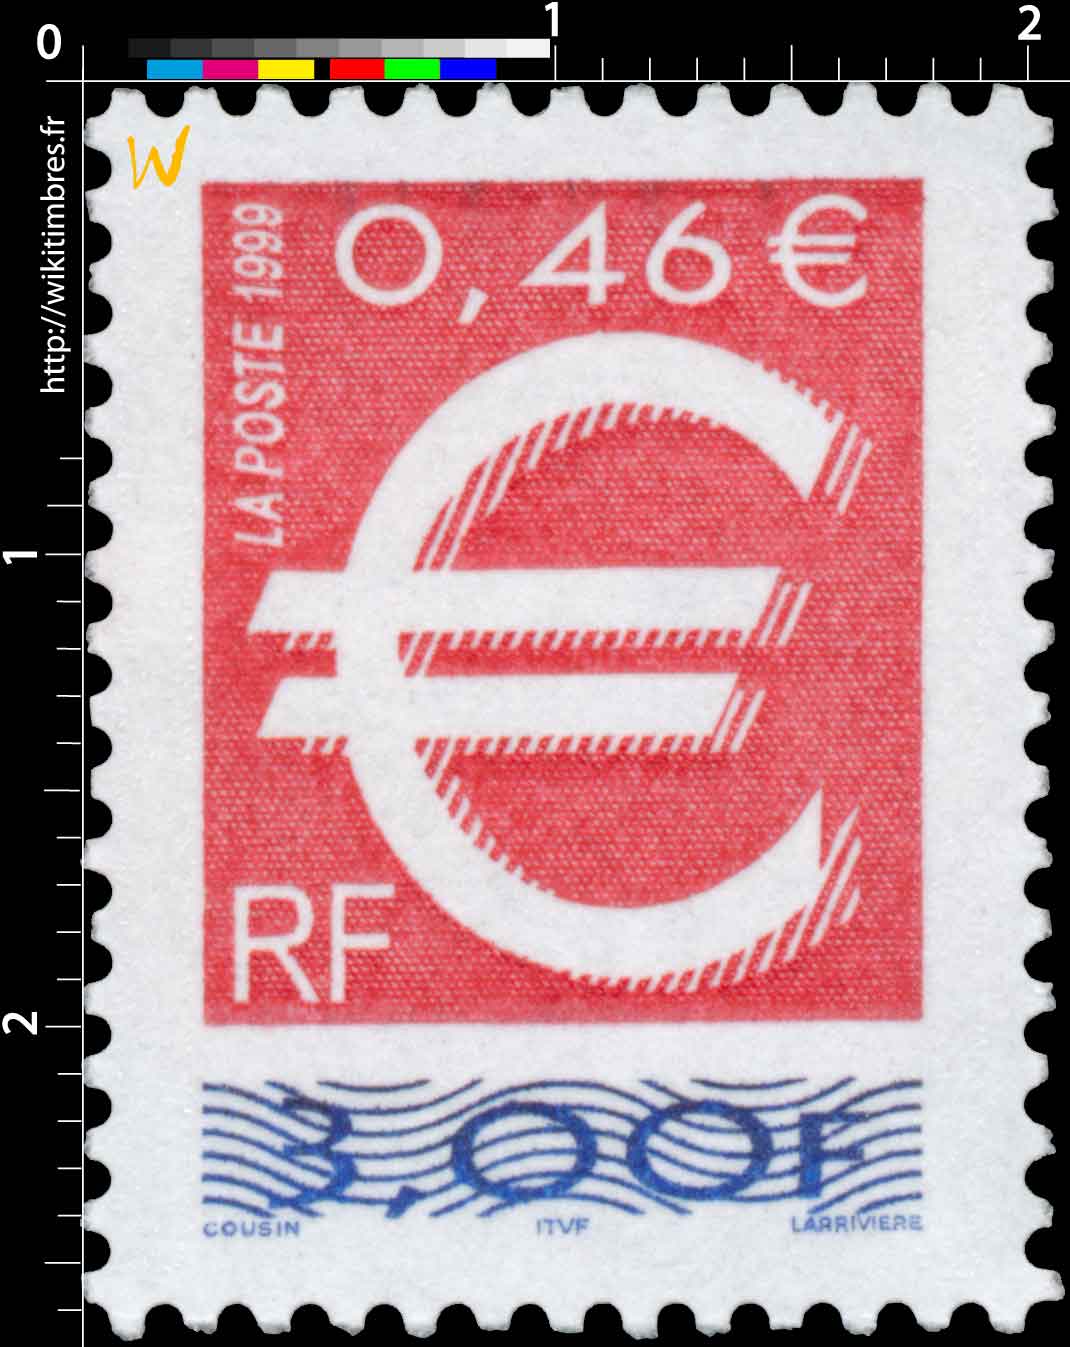 1999 - type euro